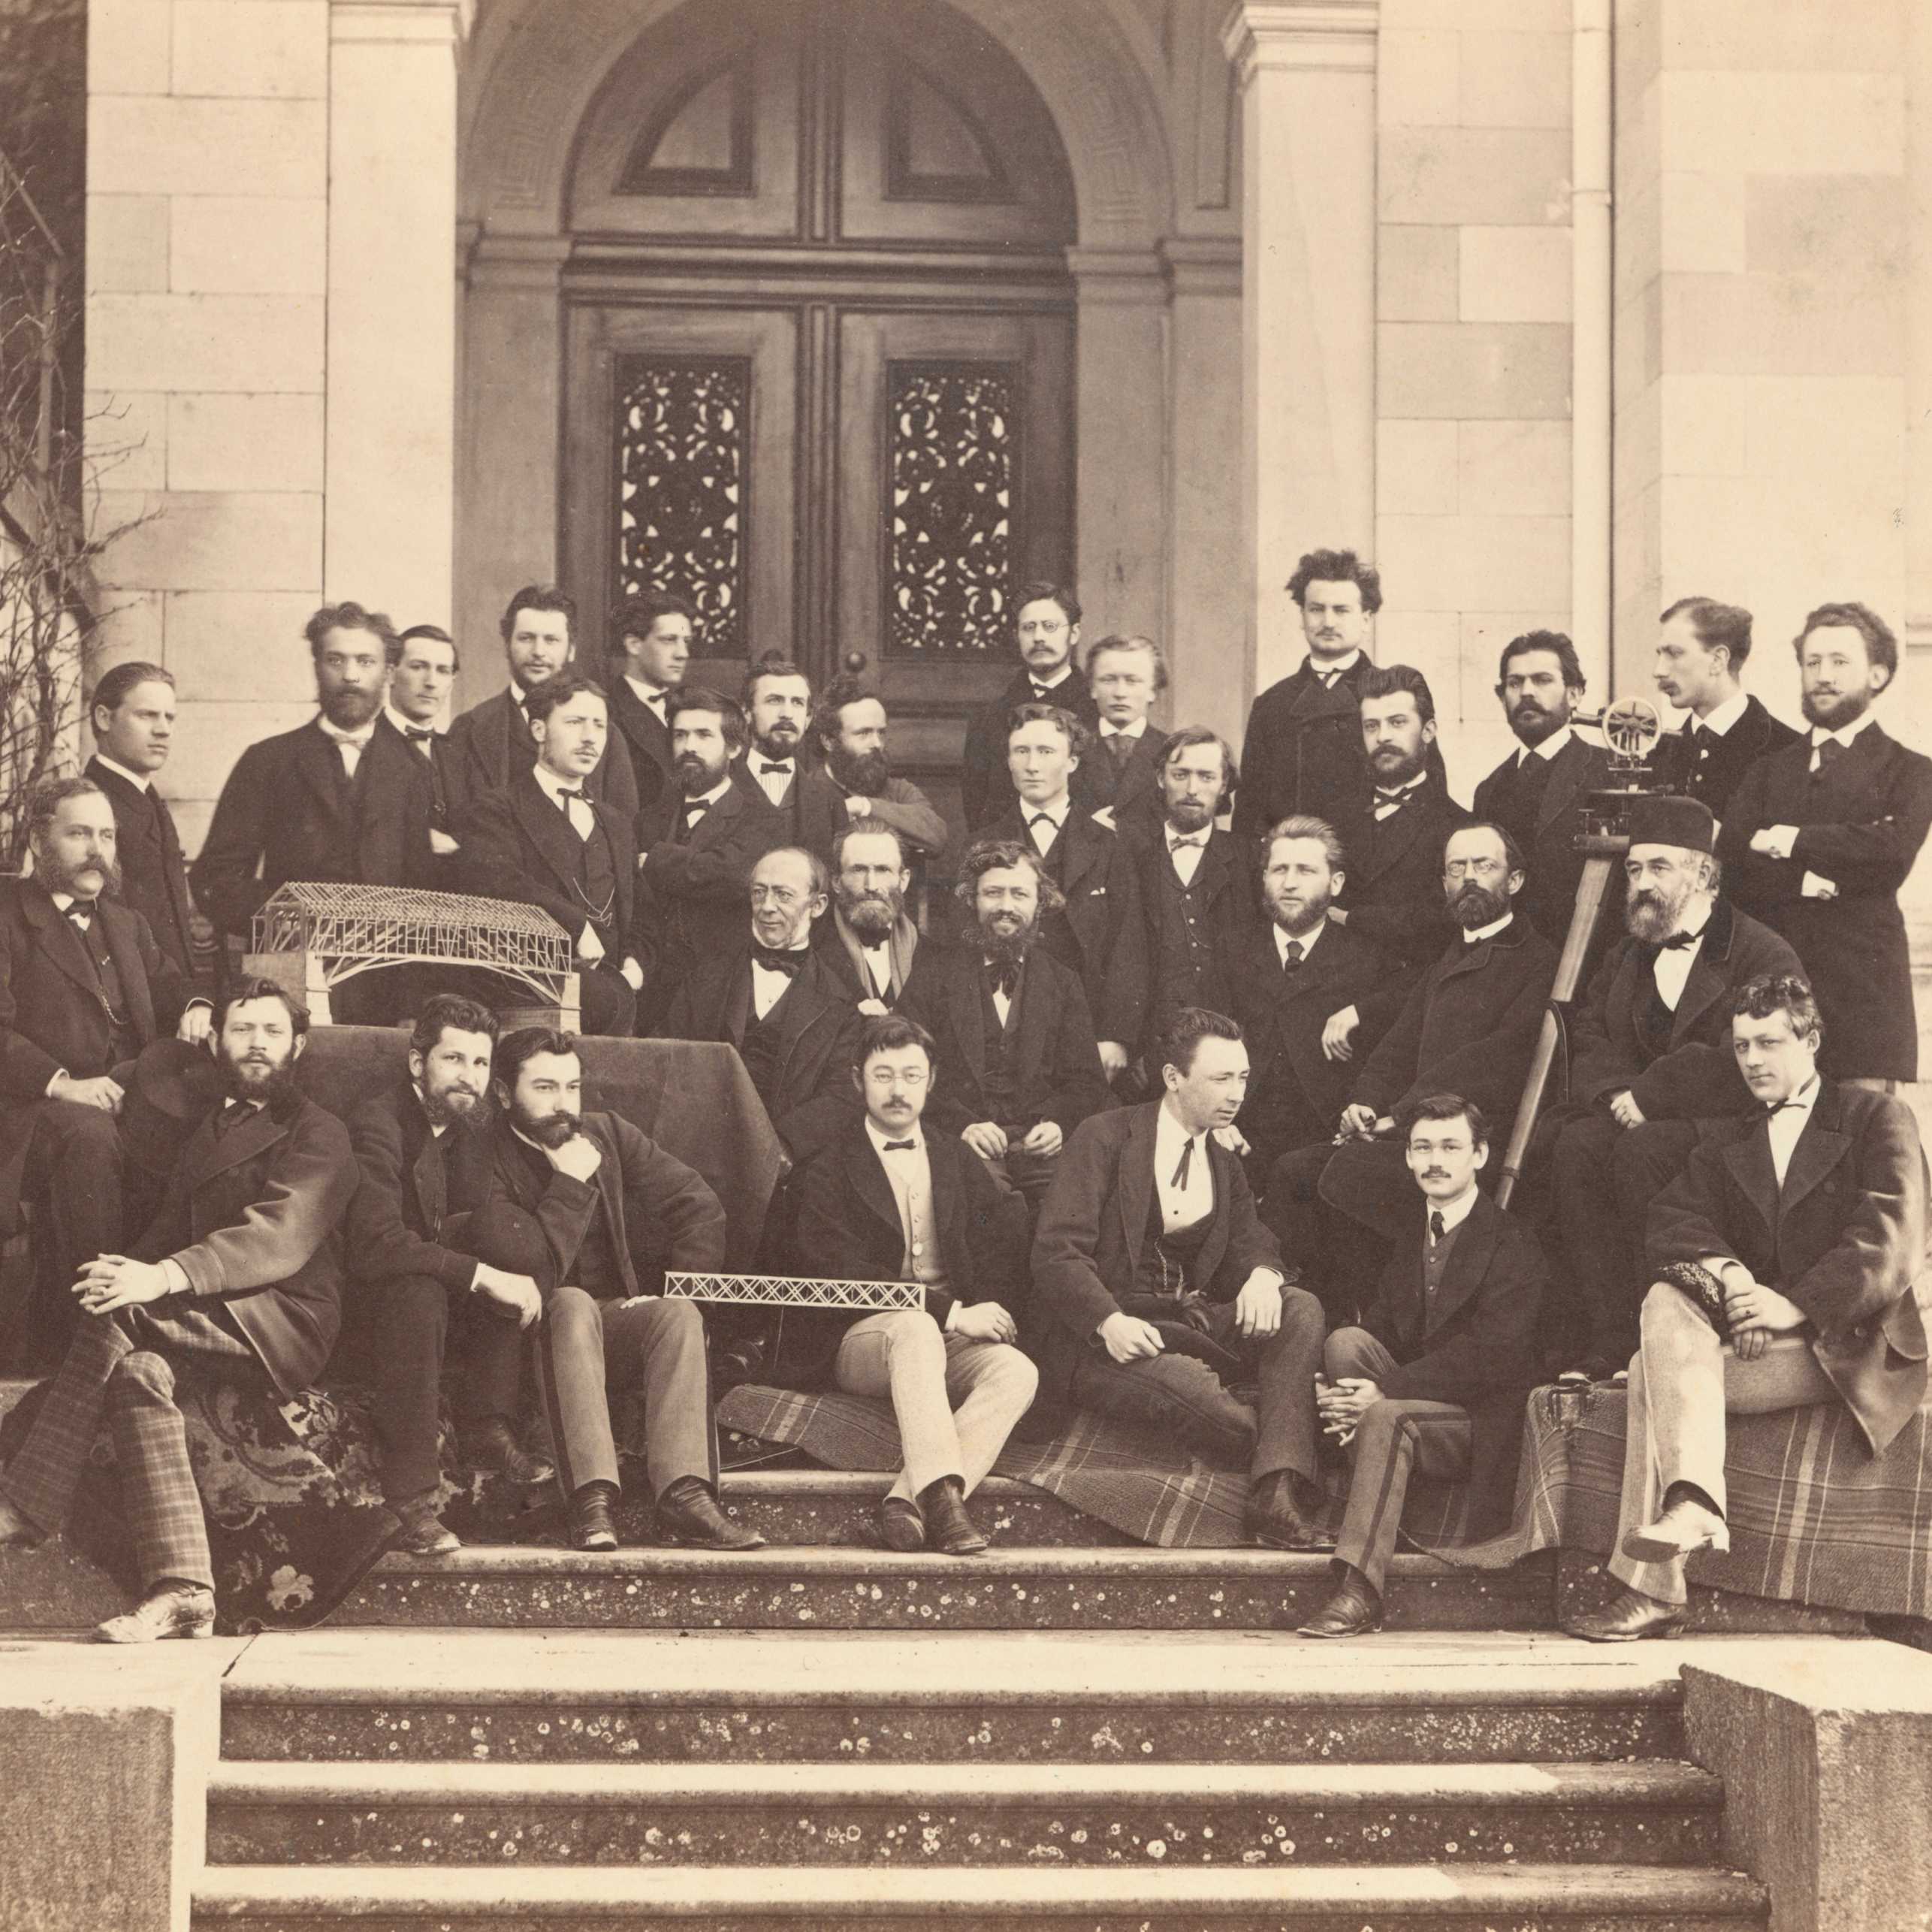 Zukünftige Funktionselite: Ingenieurschule des Polytechnikums um 1870